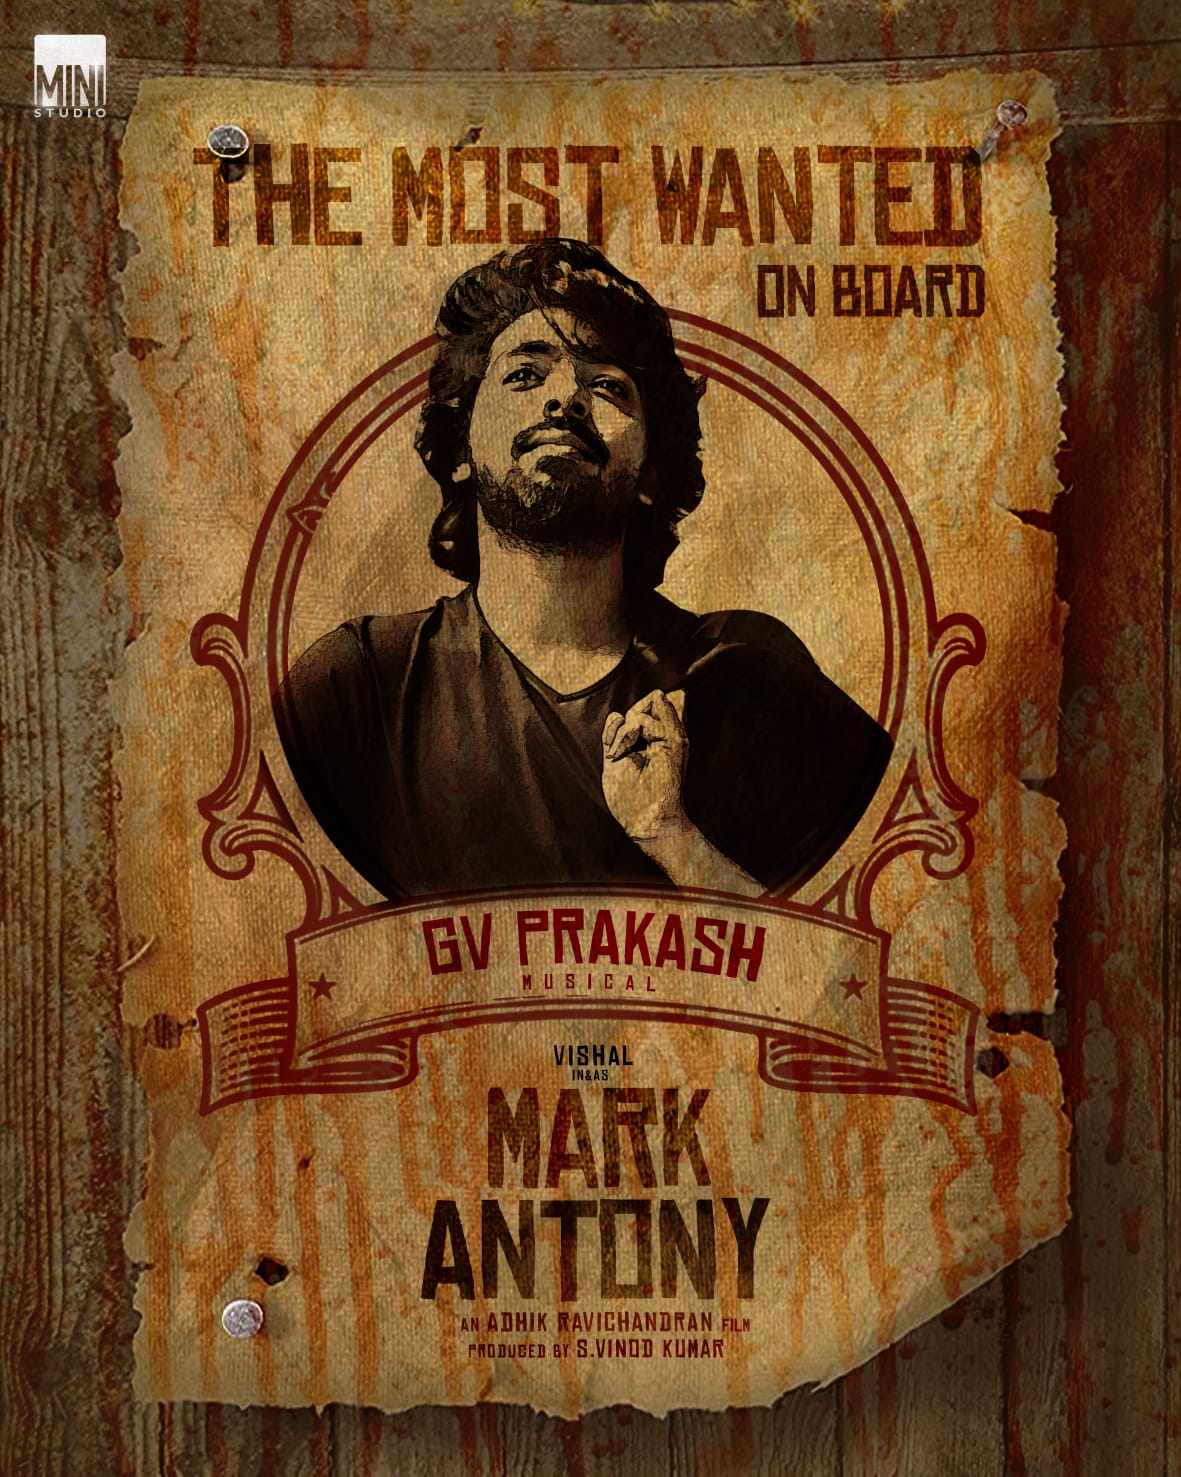 GV Prakash Kumar joined as music director of mark Anthony